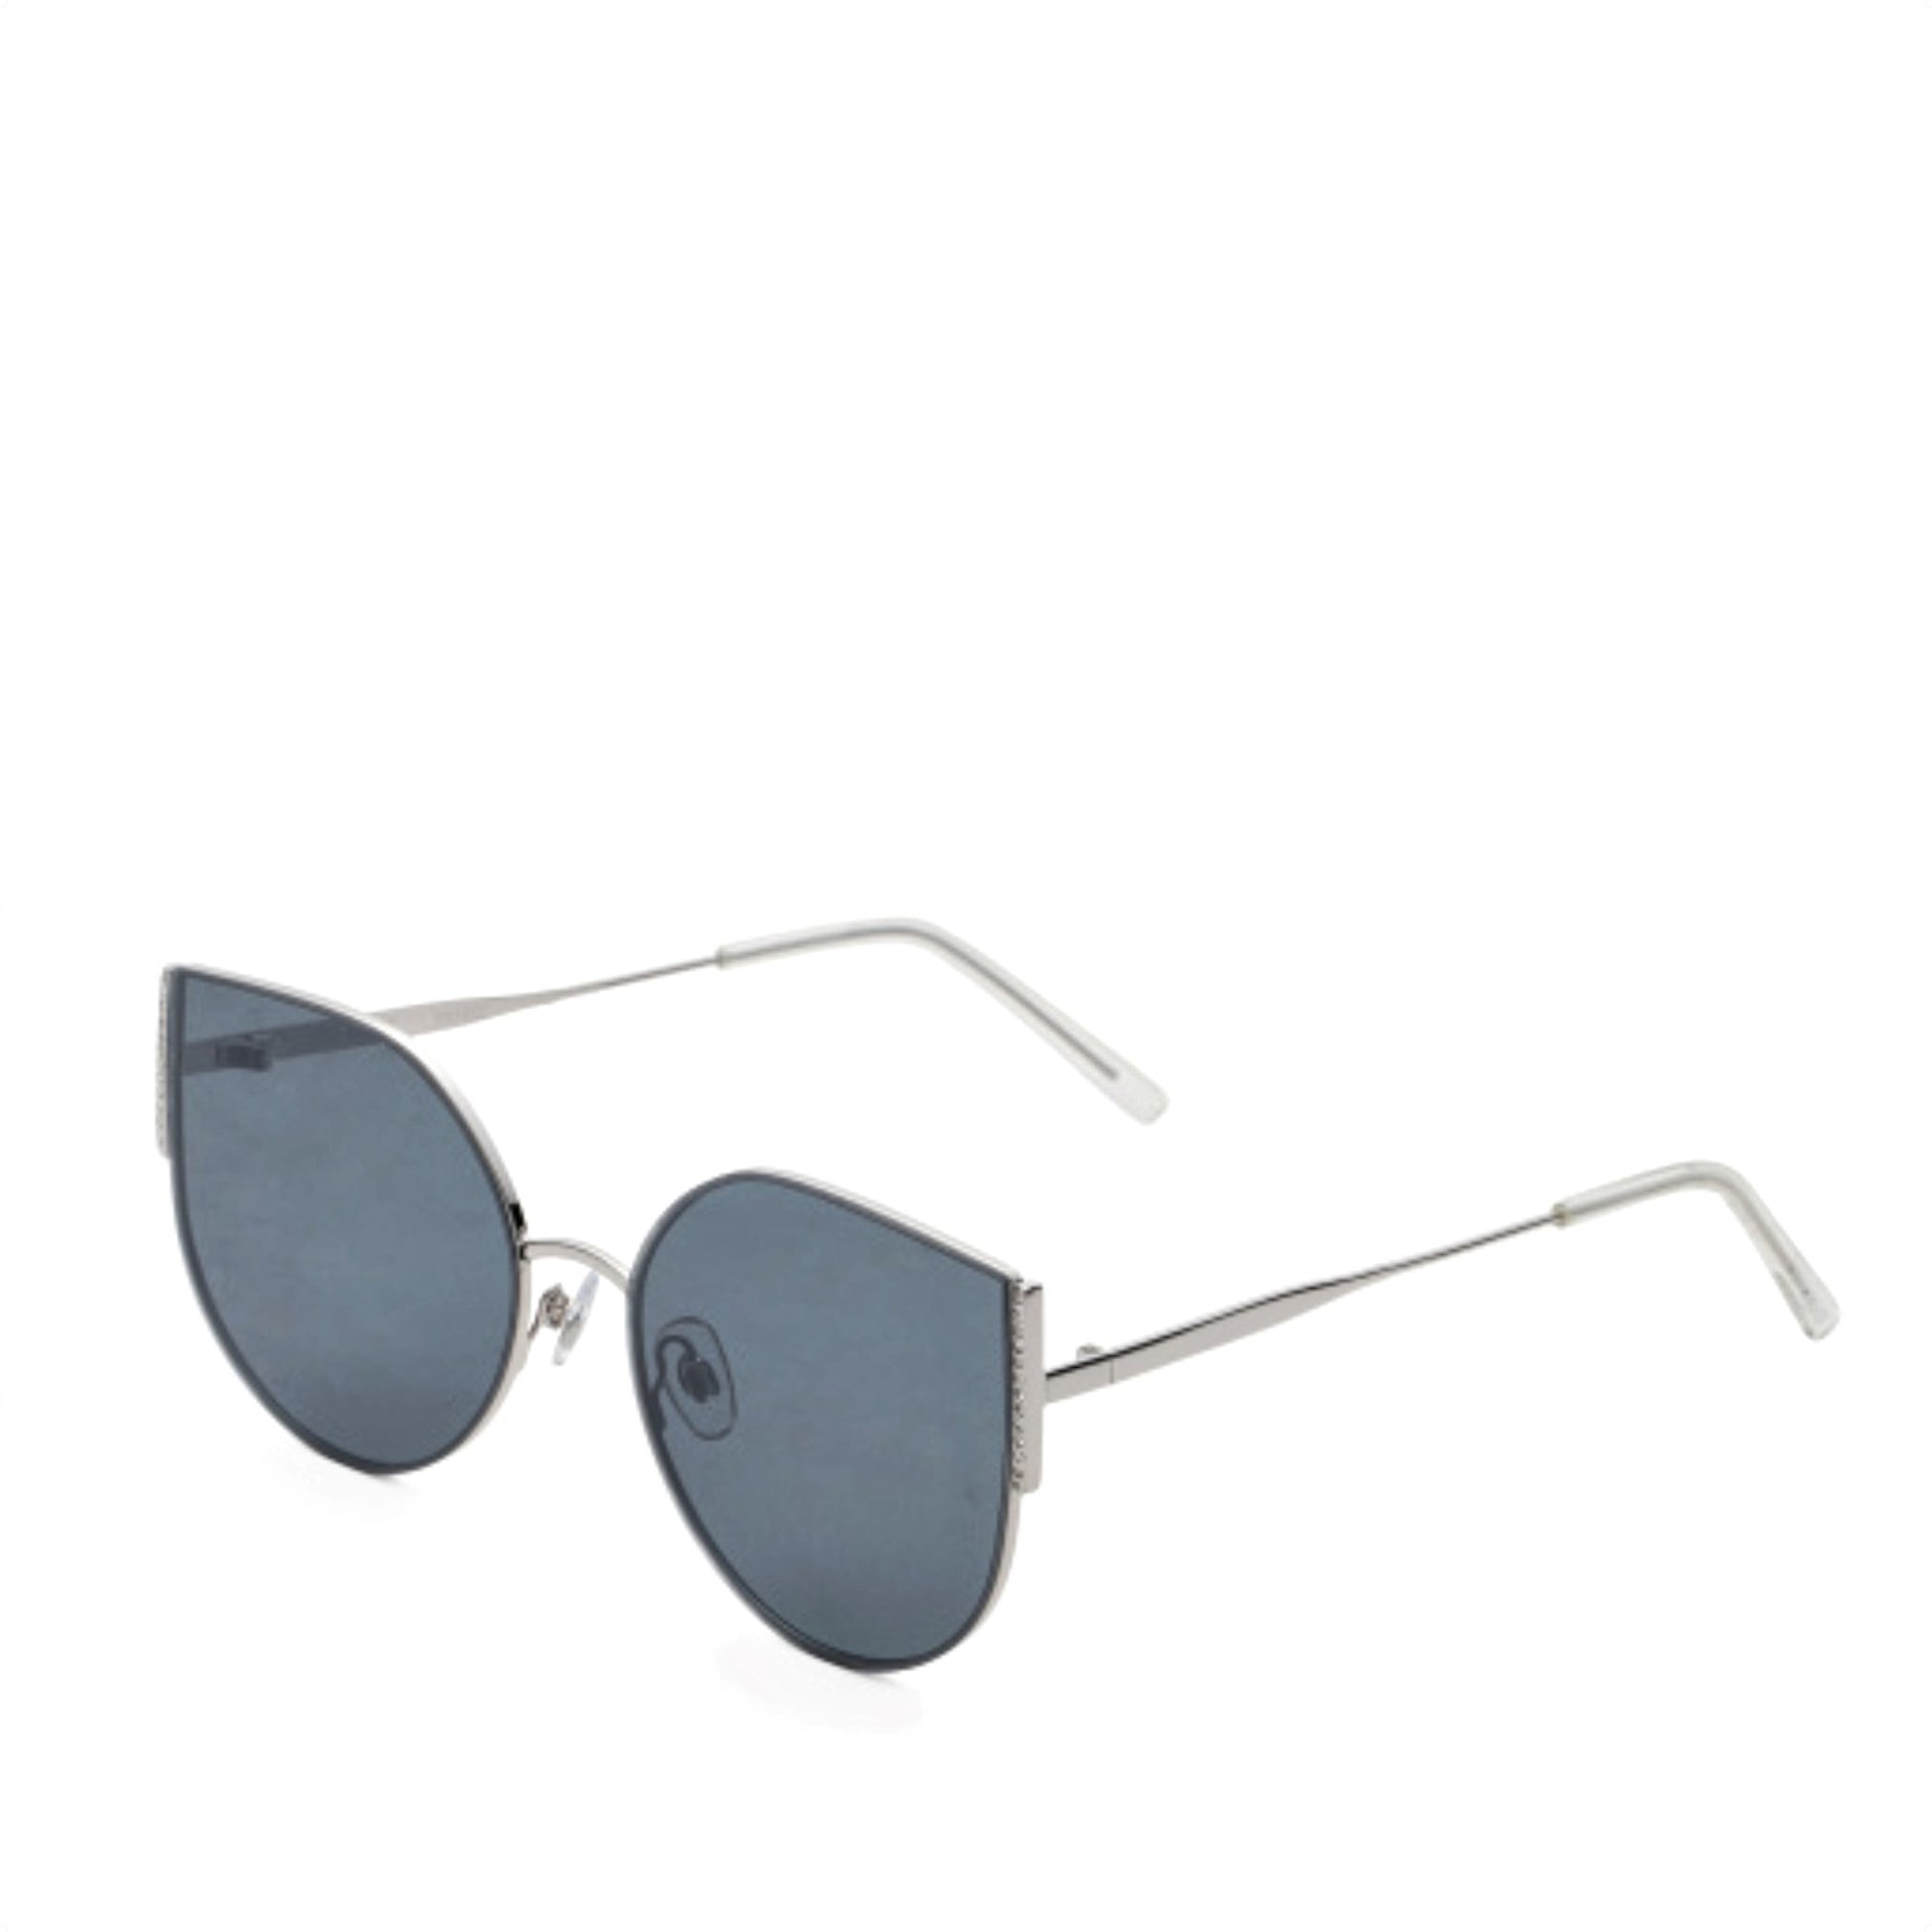 Aviator Sunglasses with Rhinestones - Women's Sunglasses Rhinestones Grey